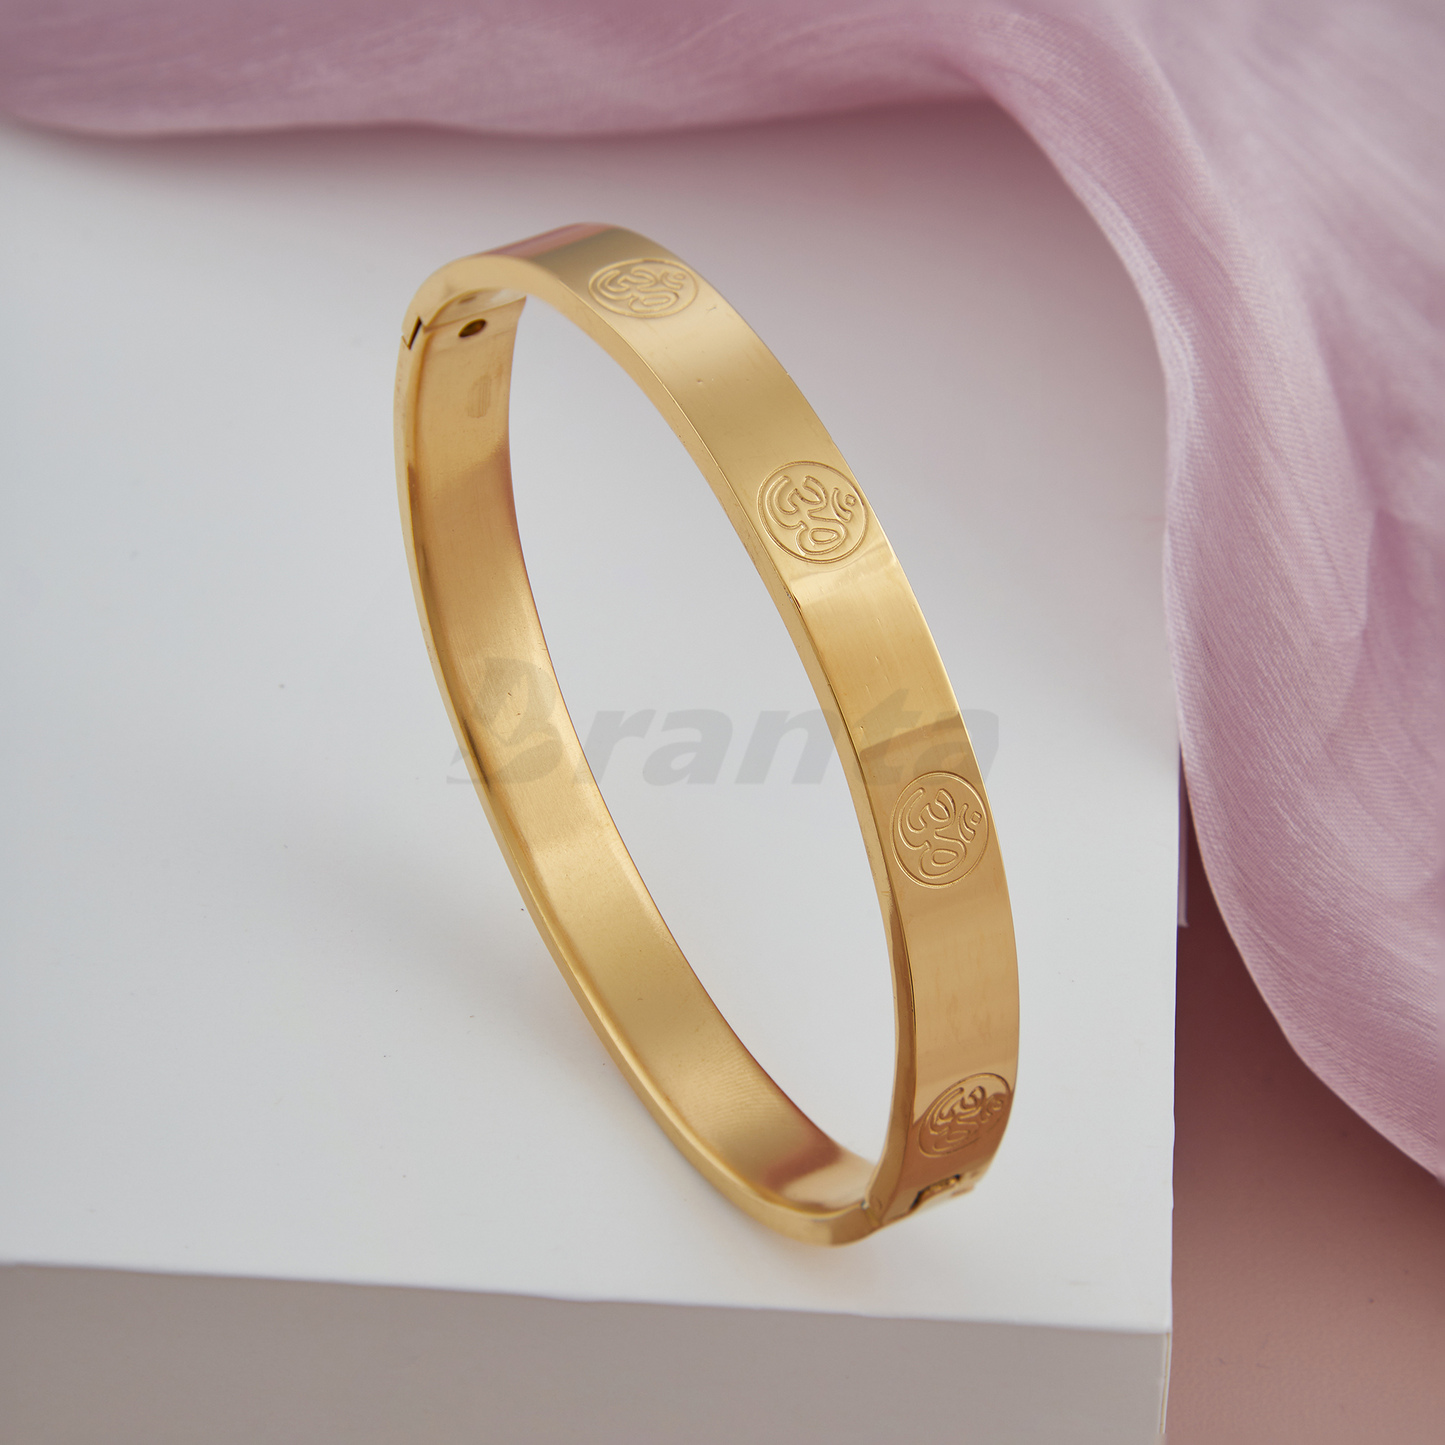 Men's gold bangle bracelet